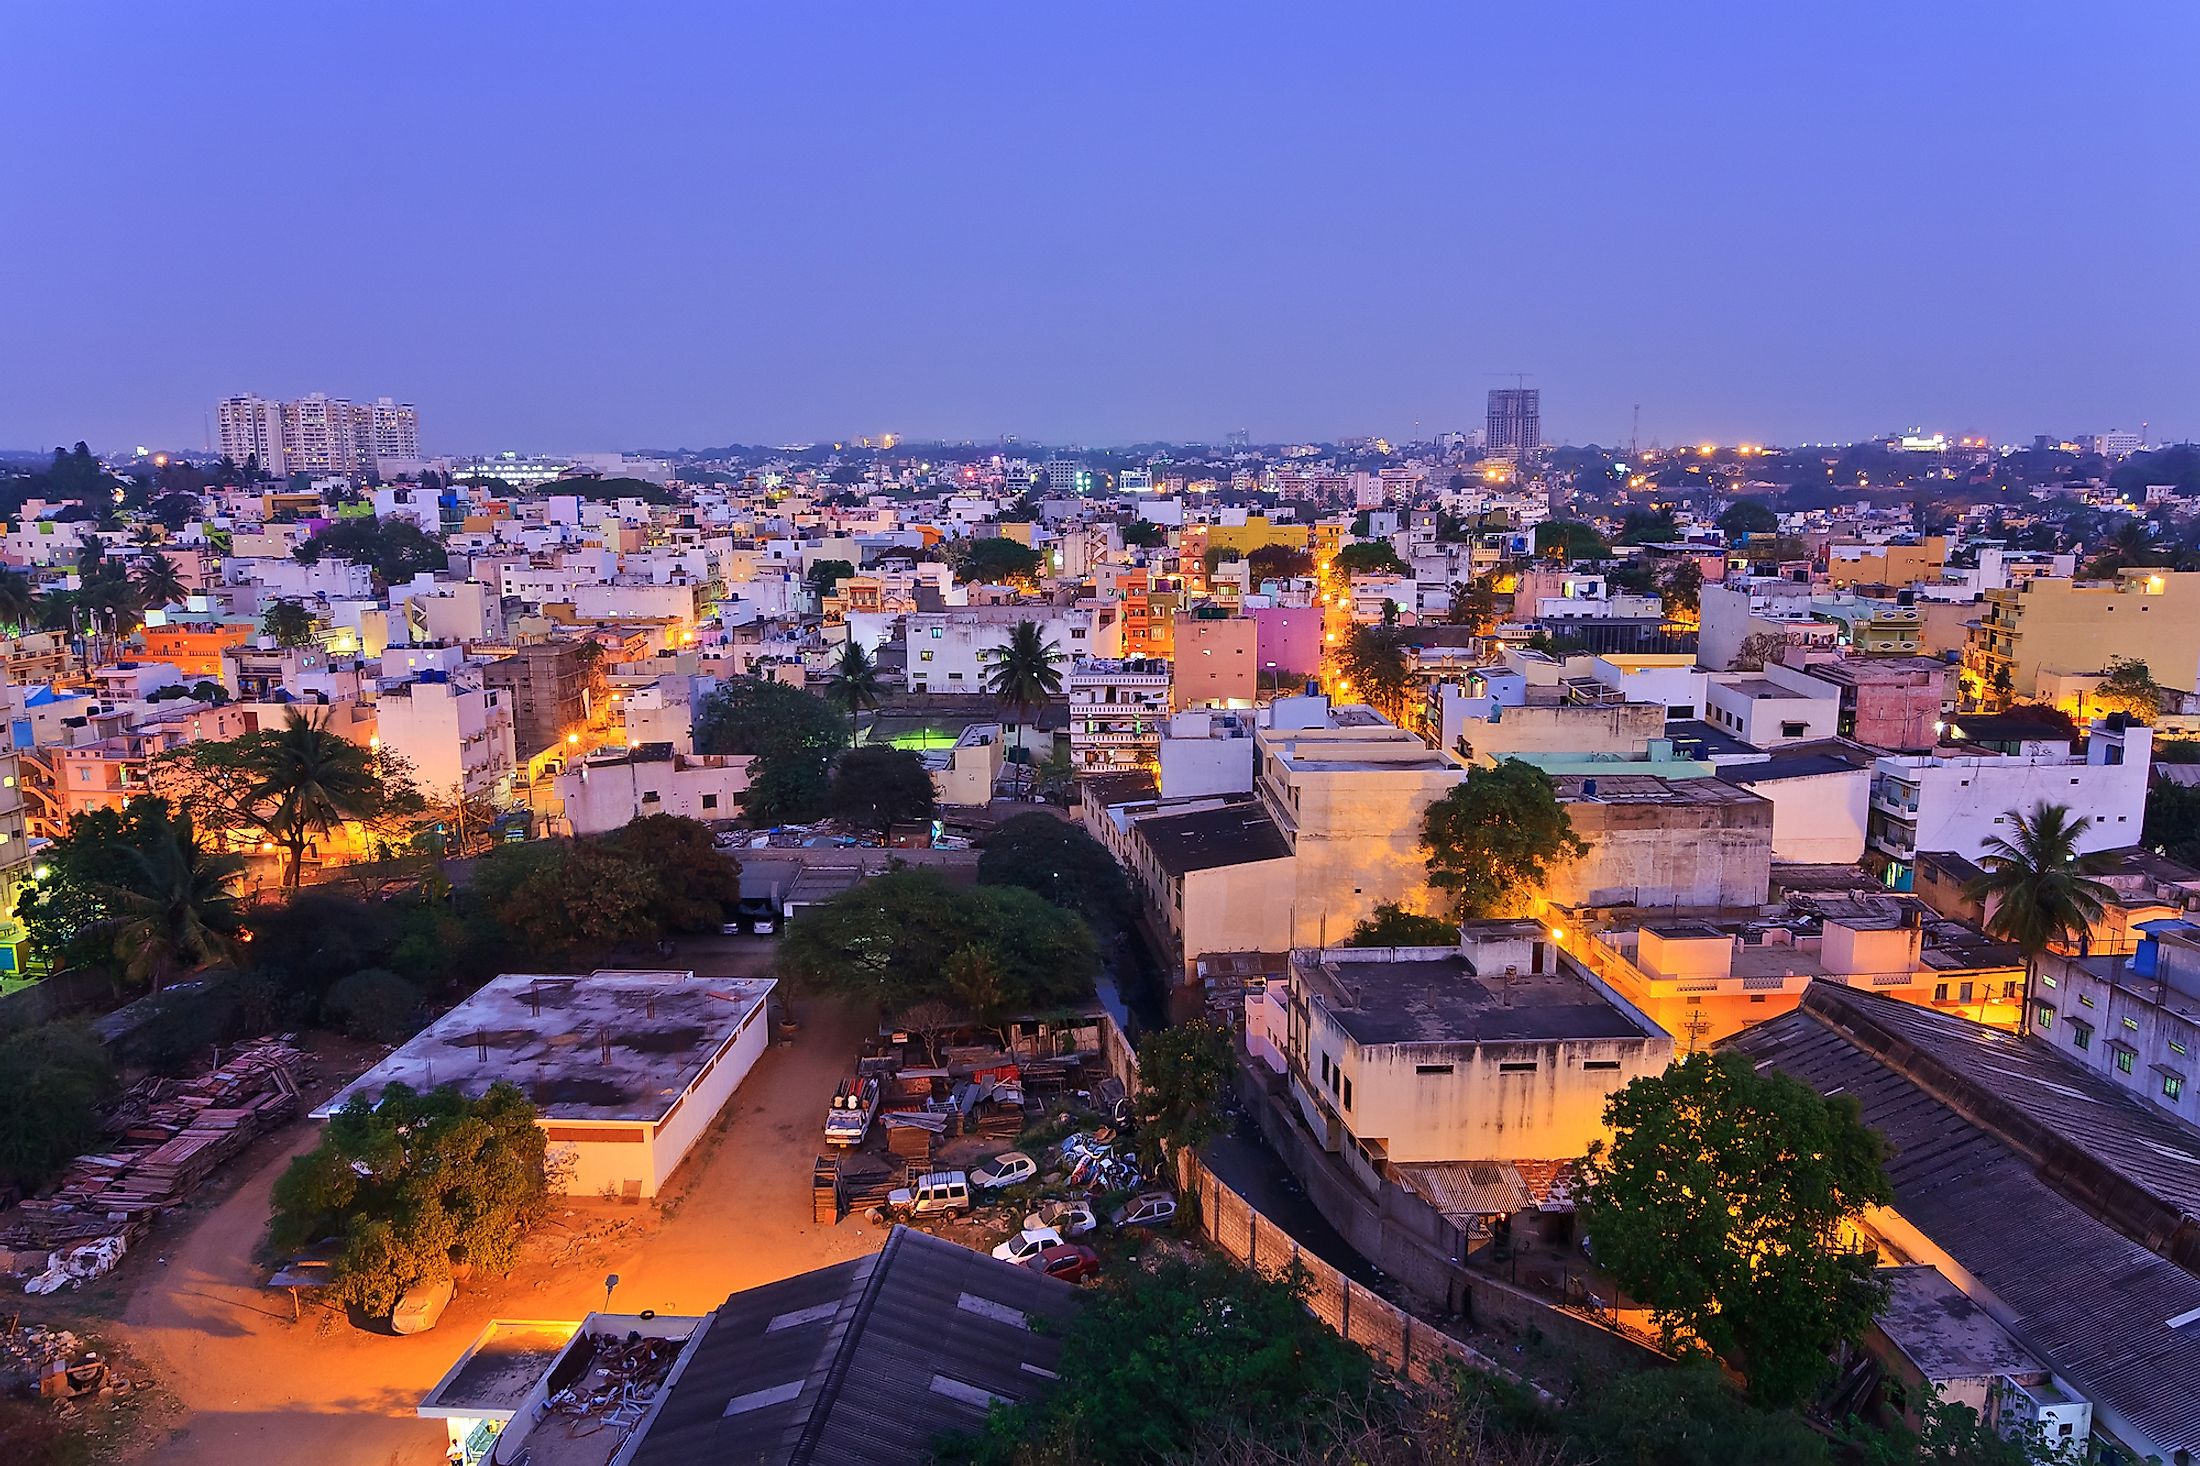 Bangalore city skyline in resident zone, Bangalore, India.